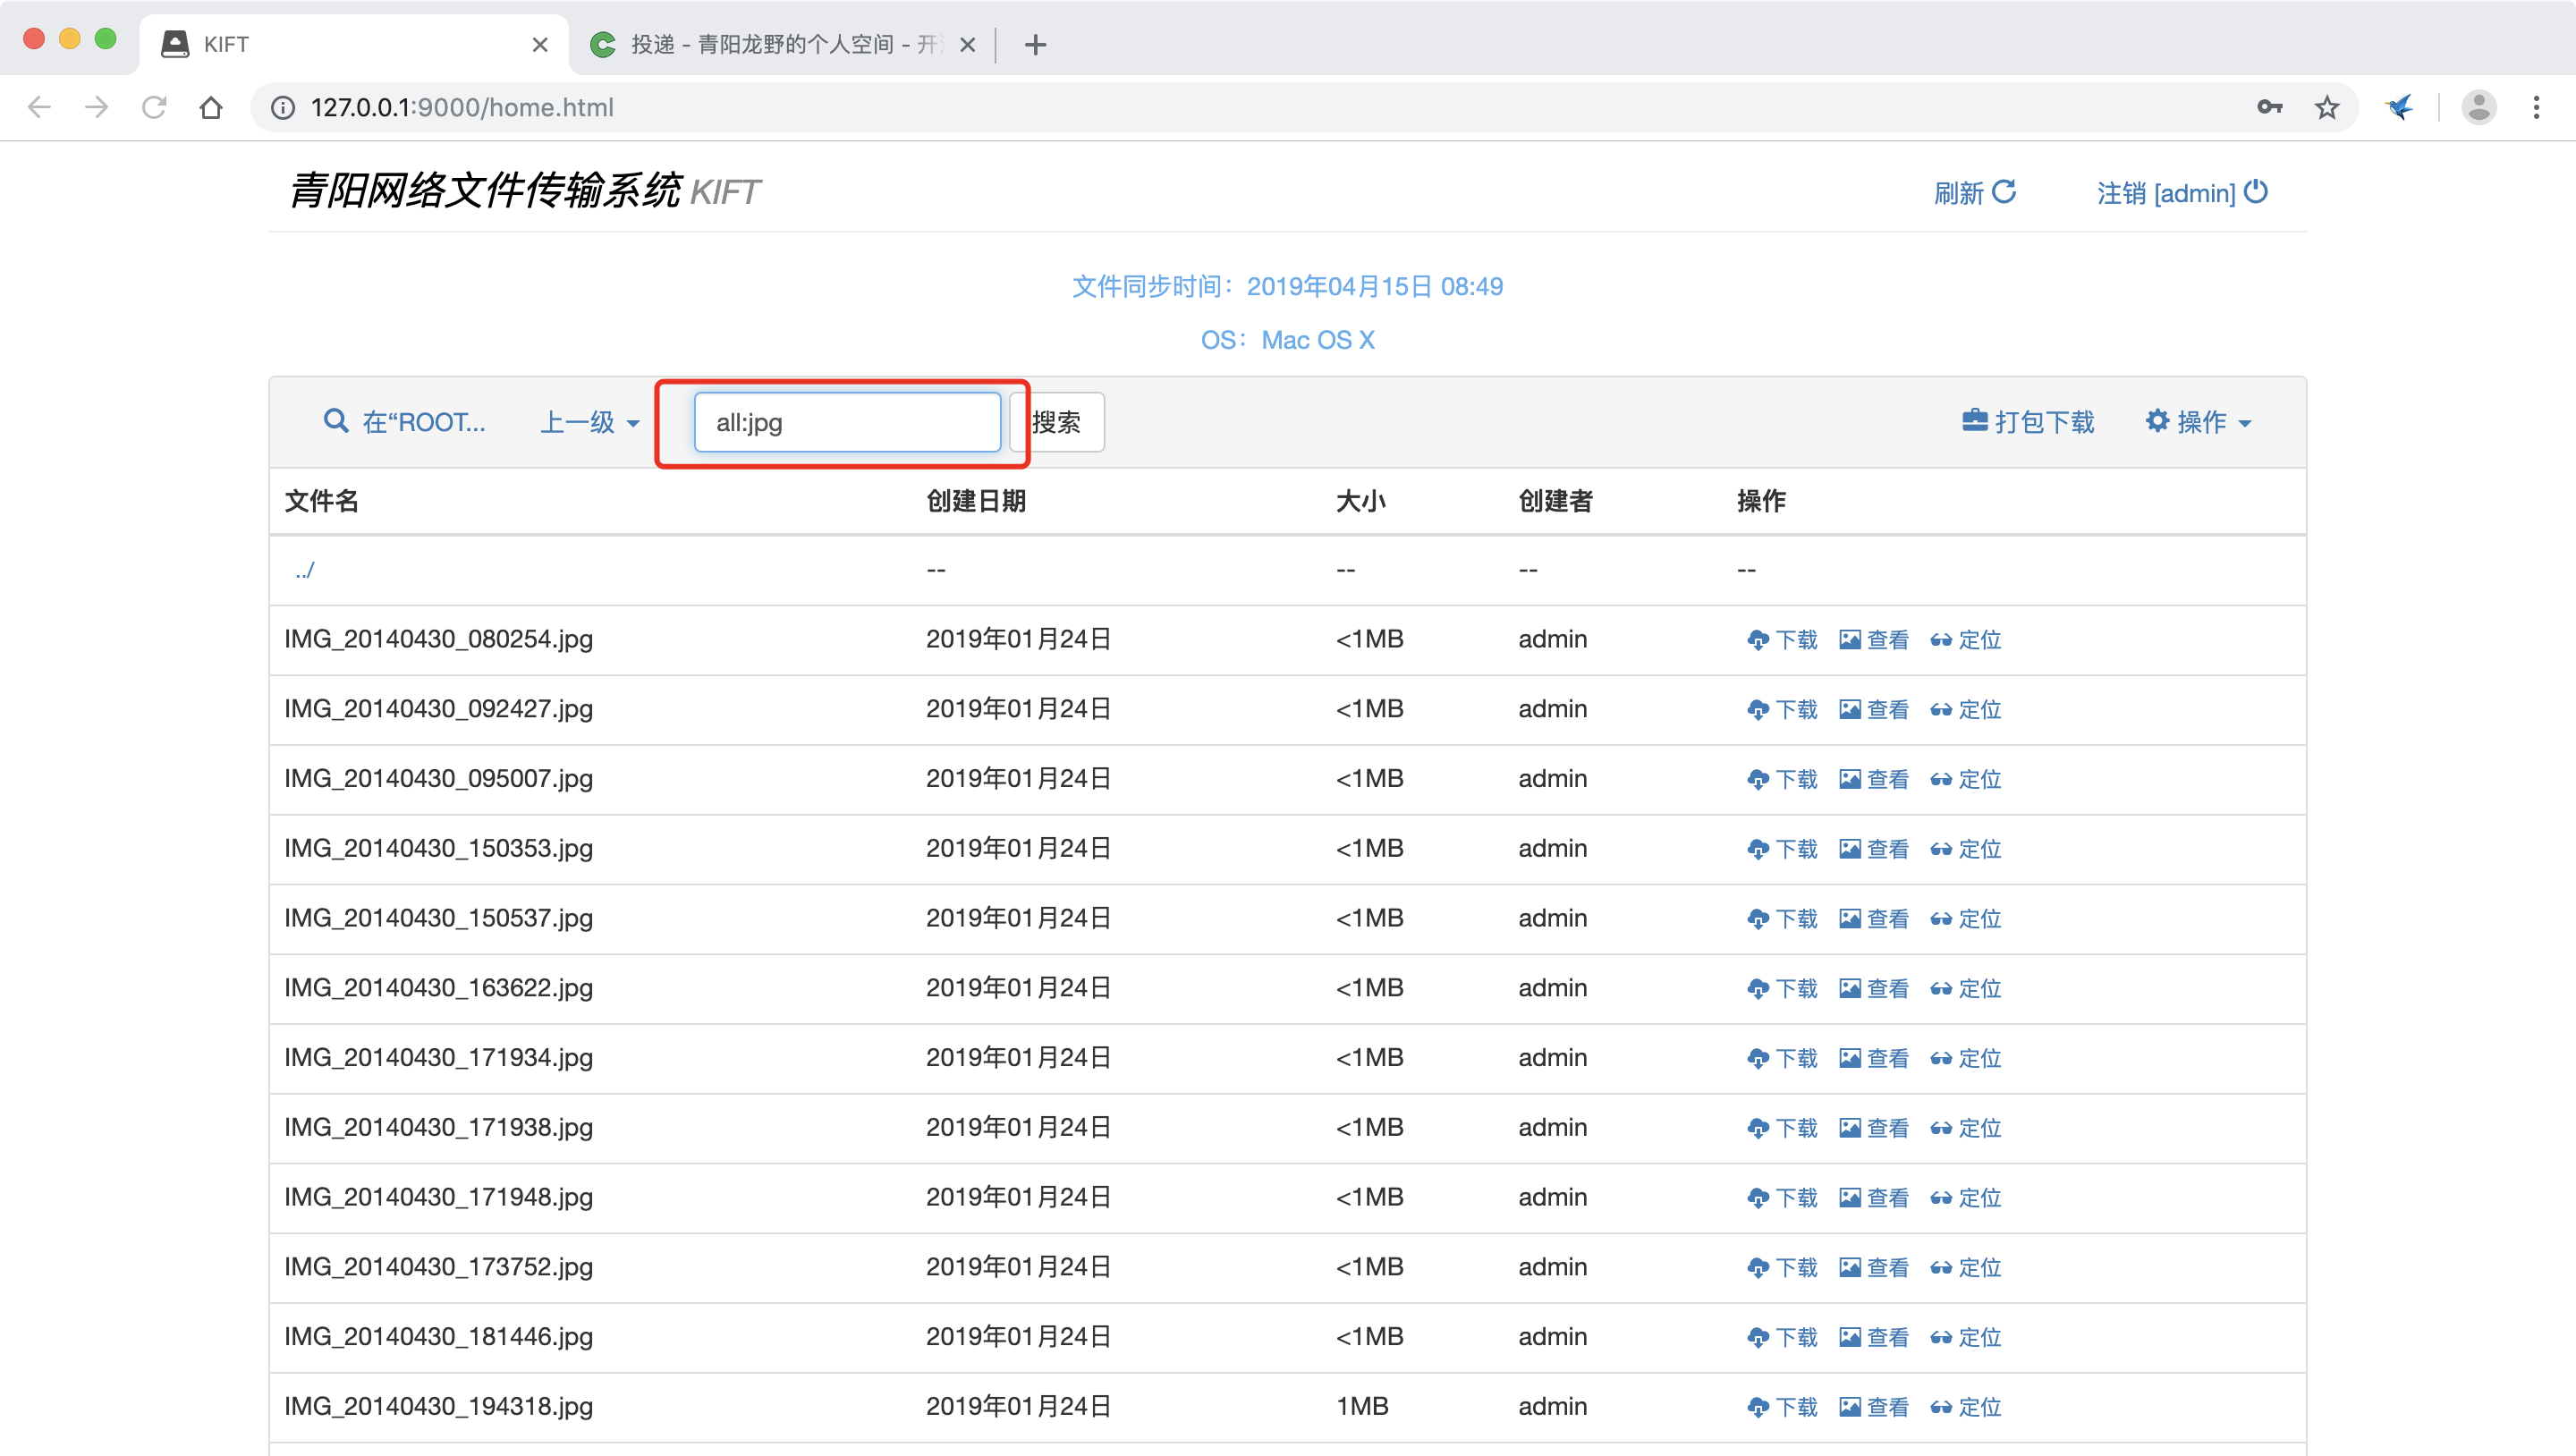 青阳网络文件传输系统 kiftd 1.0.17 正式发布 - 